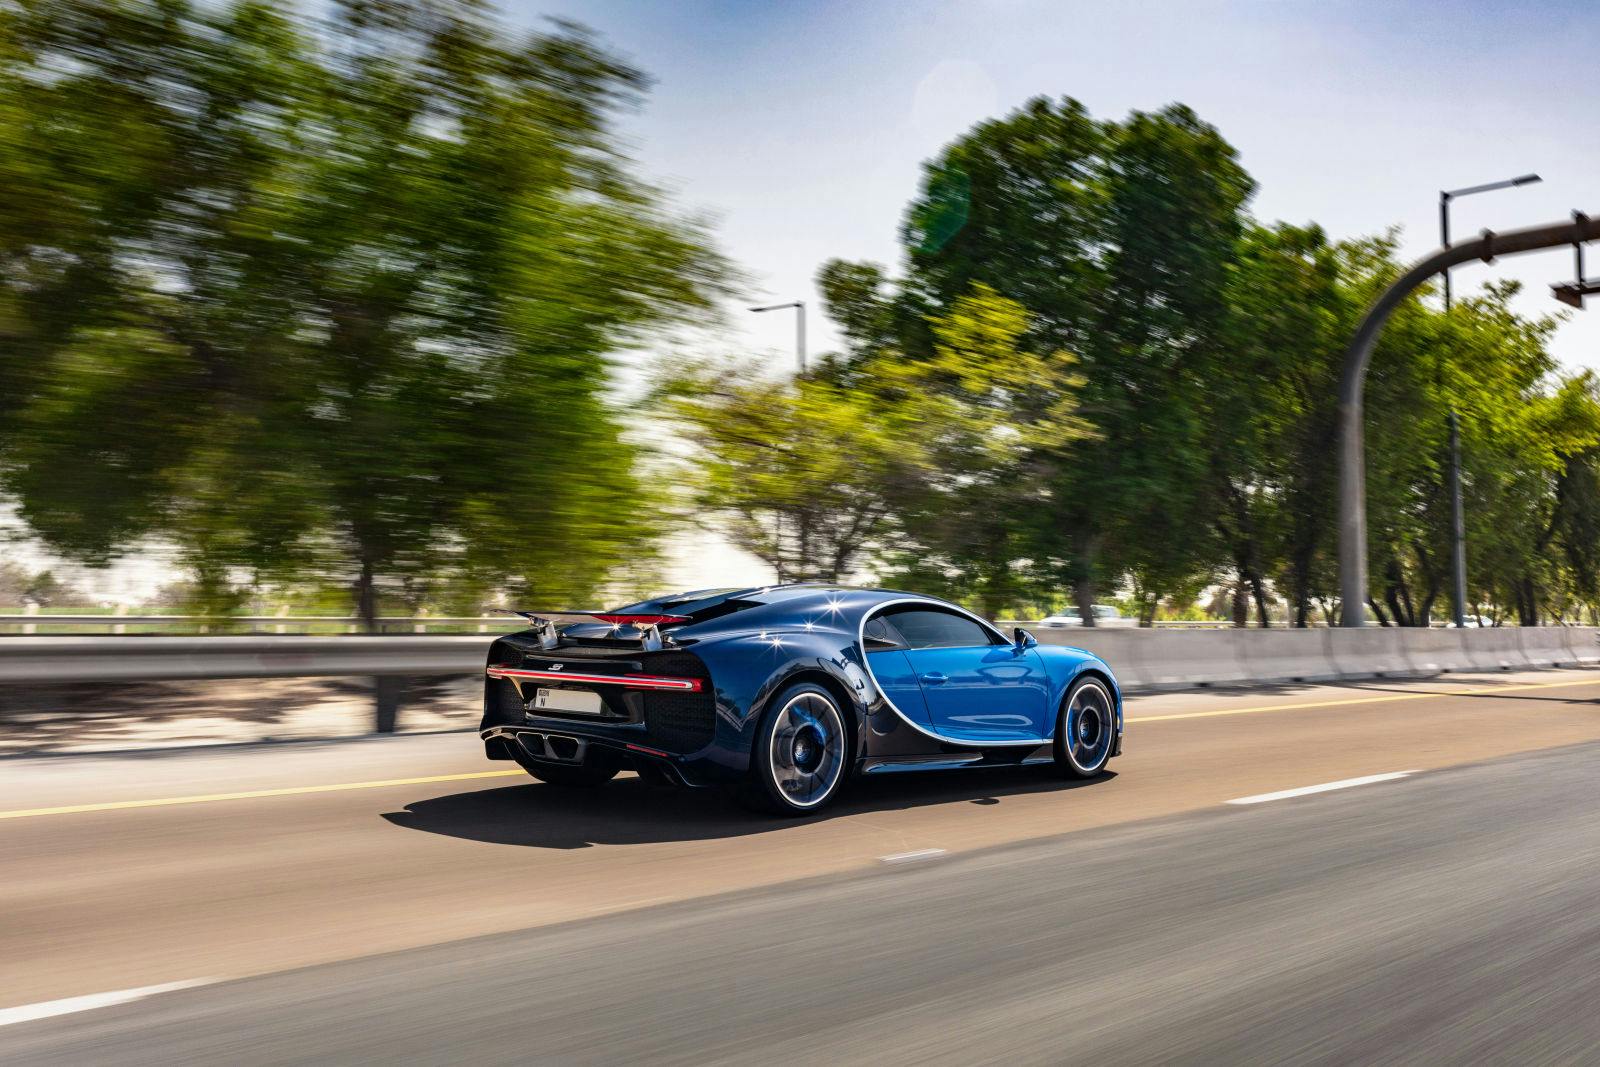 Le 2ème rallye des propriétaires Bugatti aux Émirats arabes unis.